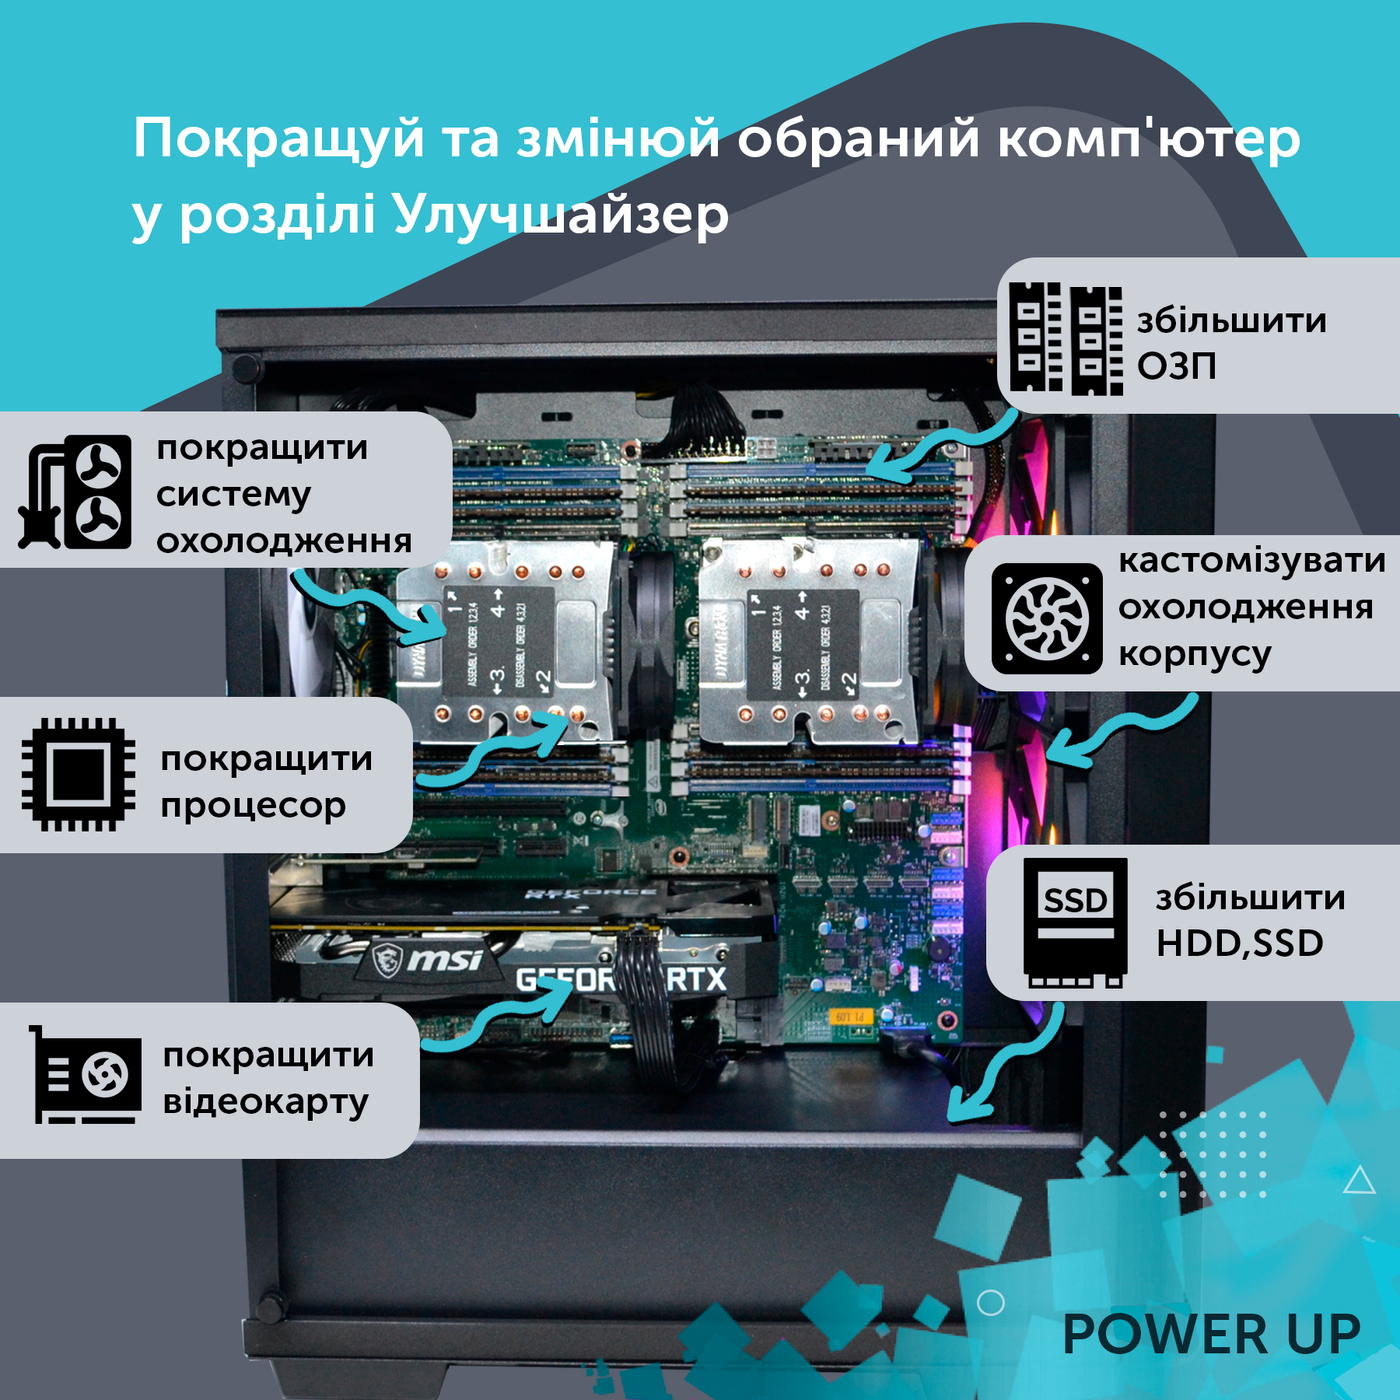 Двухпроцессорная рабочая станция PowerUp #350 Xeon E5 2699 v4 x2/64 GB/SSD 1TB/GeForce RTX 4070 12GB